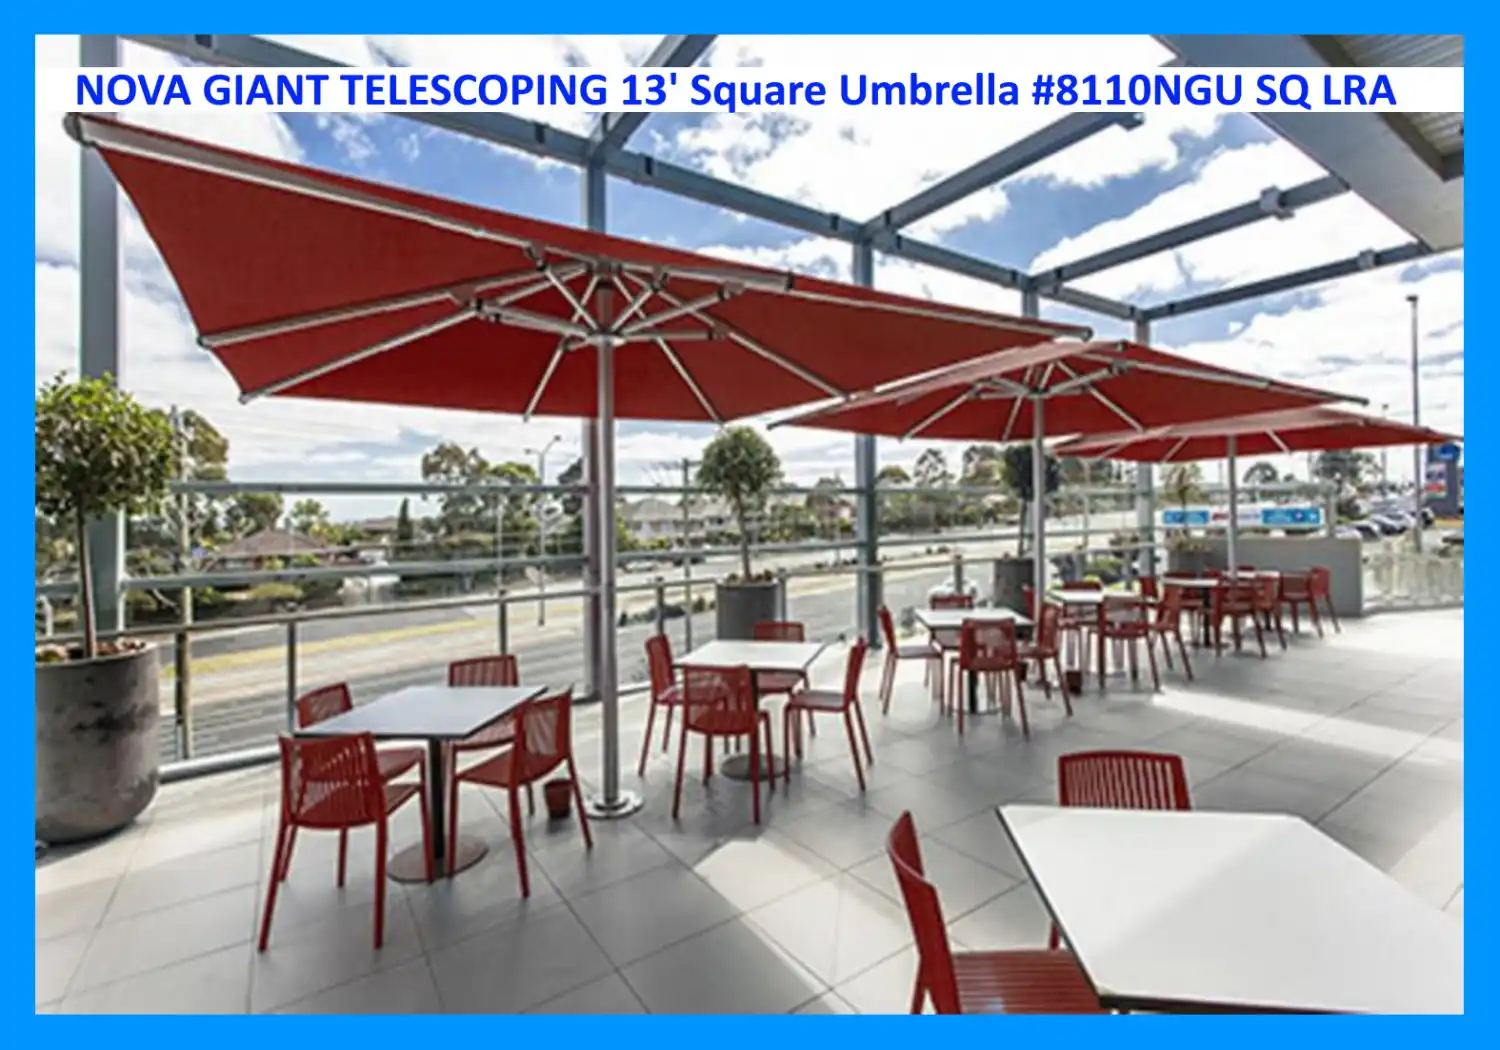 NOVA GIANT TELESCOPING 13' Square Umbrella #8110NGU SQ LRA